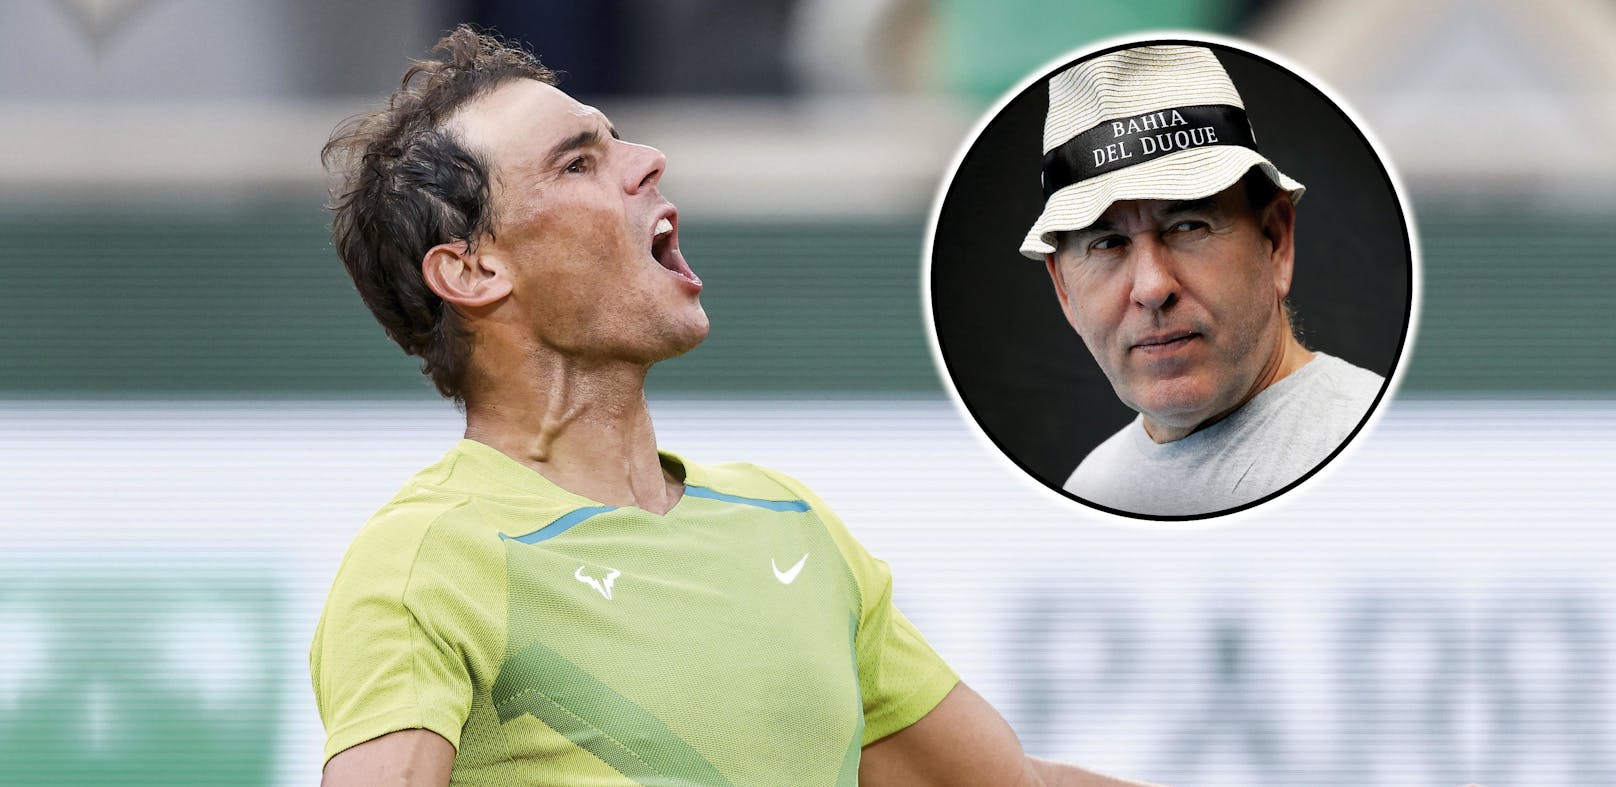 Bresnik über Nadal: "Ich sah ihn körperlich nicht auf der Höhe von Djokovic."